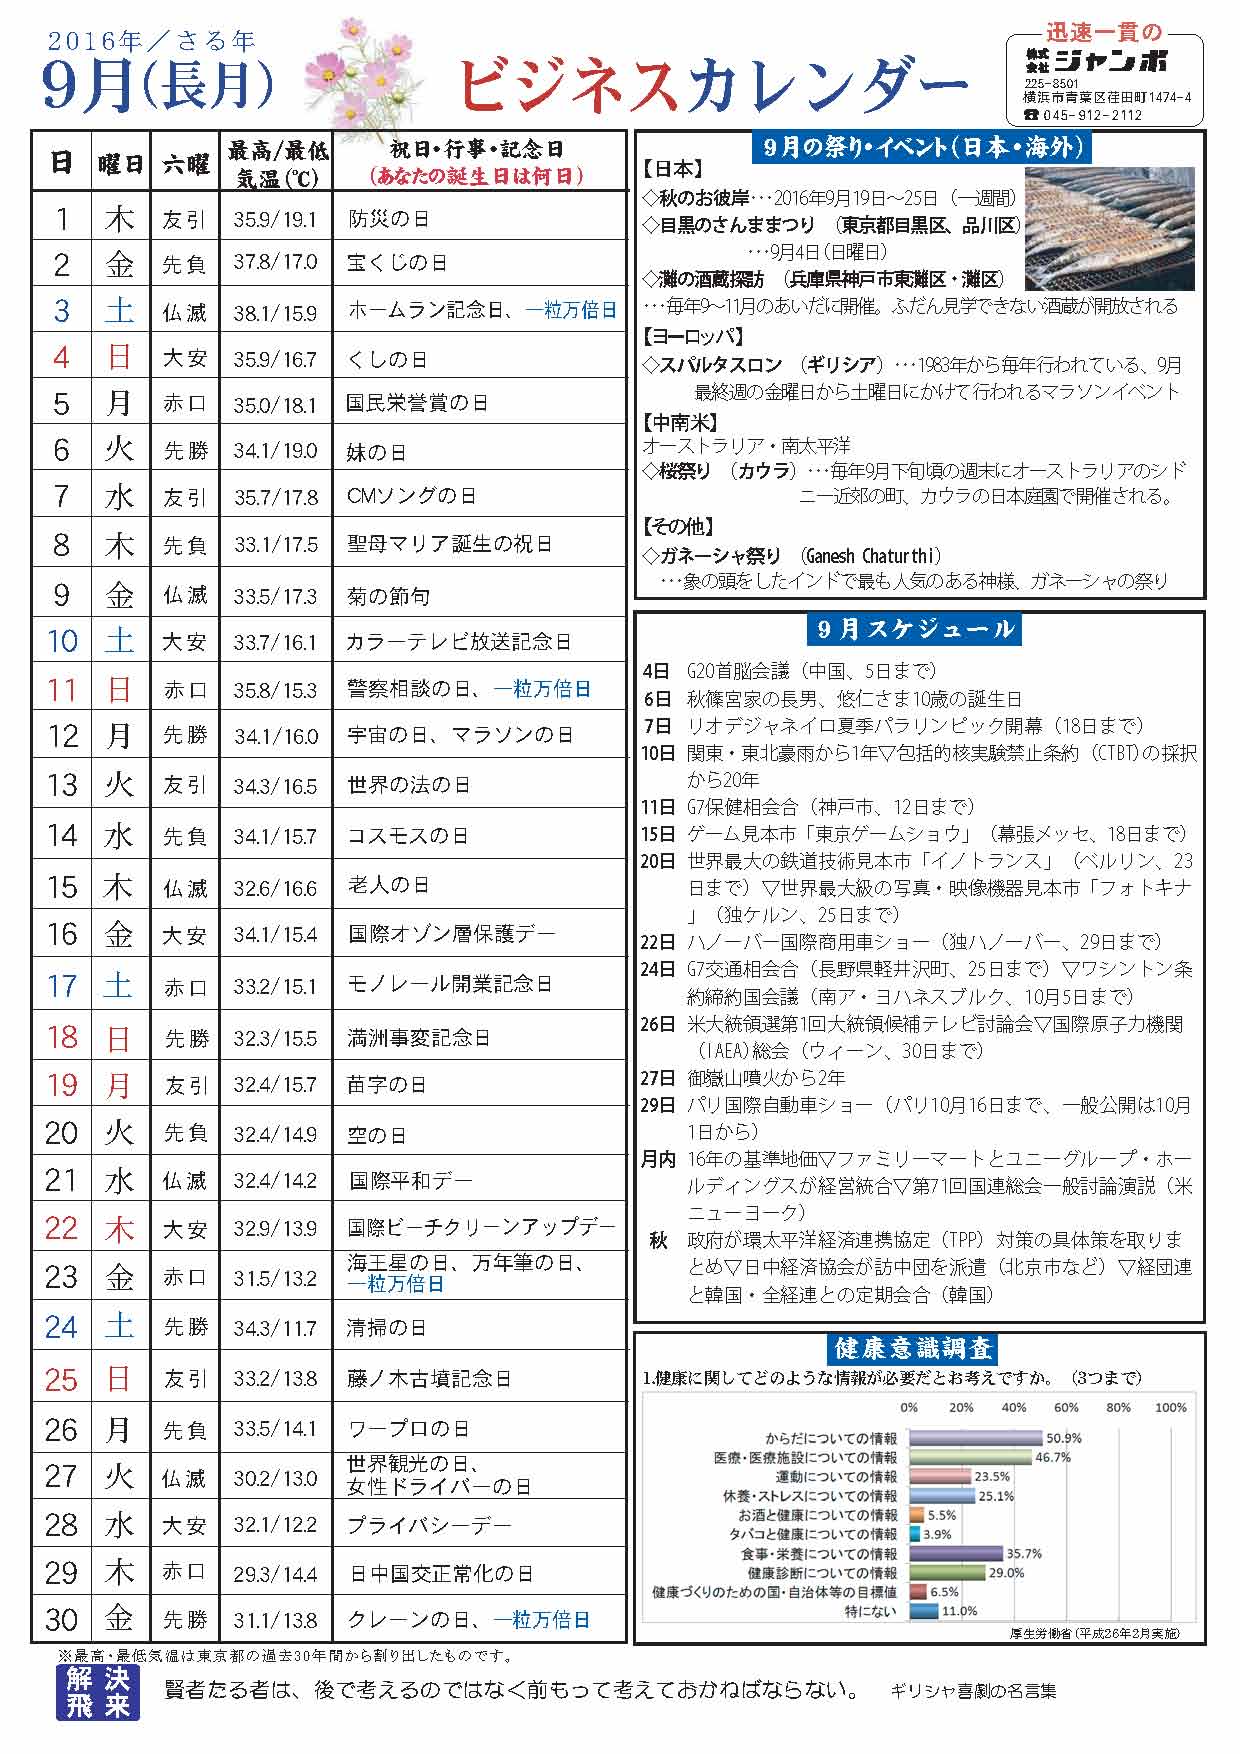 201609 ビジネスカレンダー ジャンボ百花繚乱